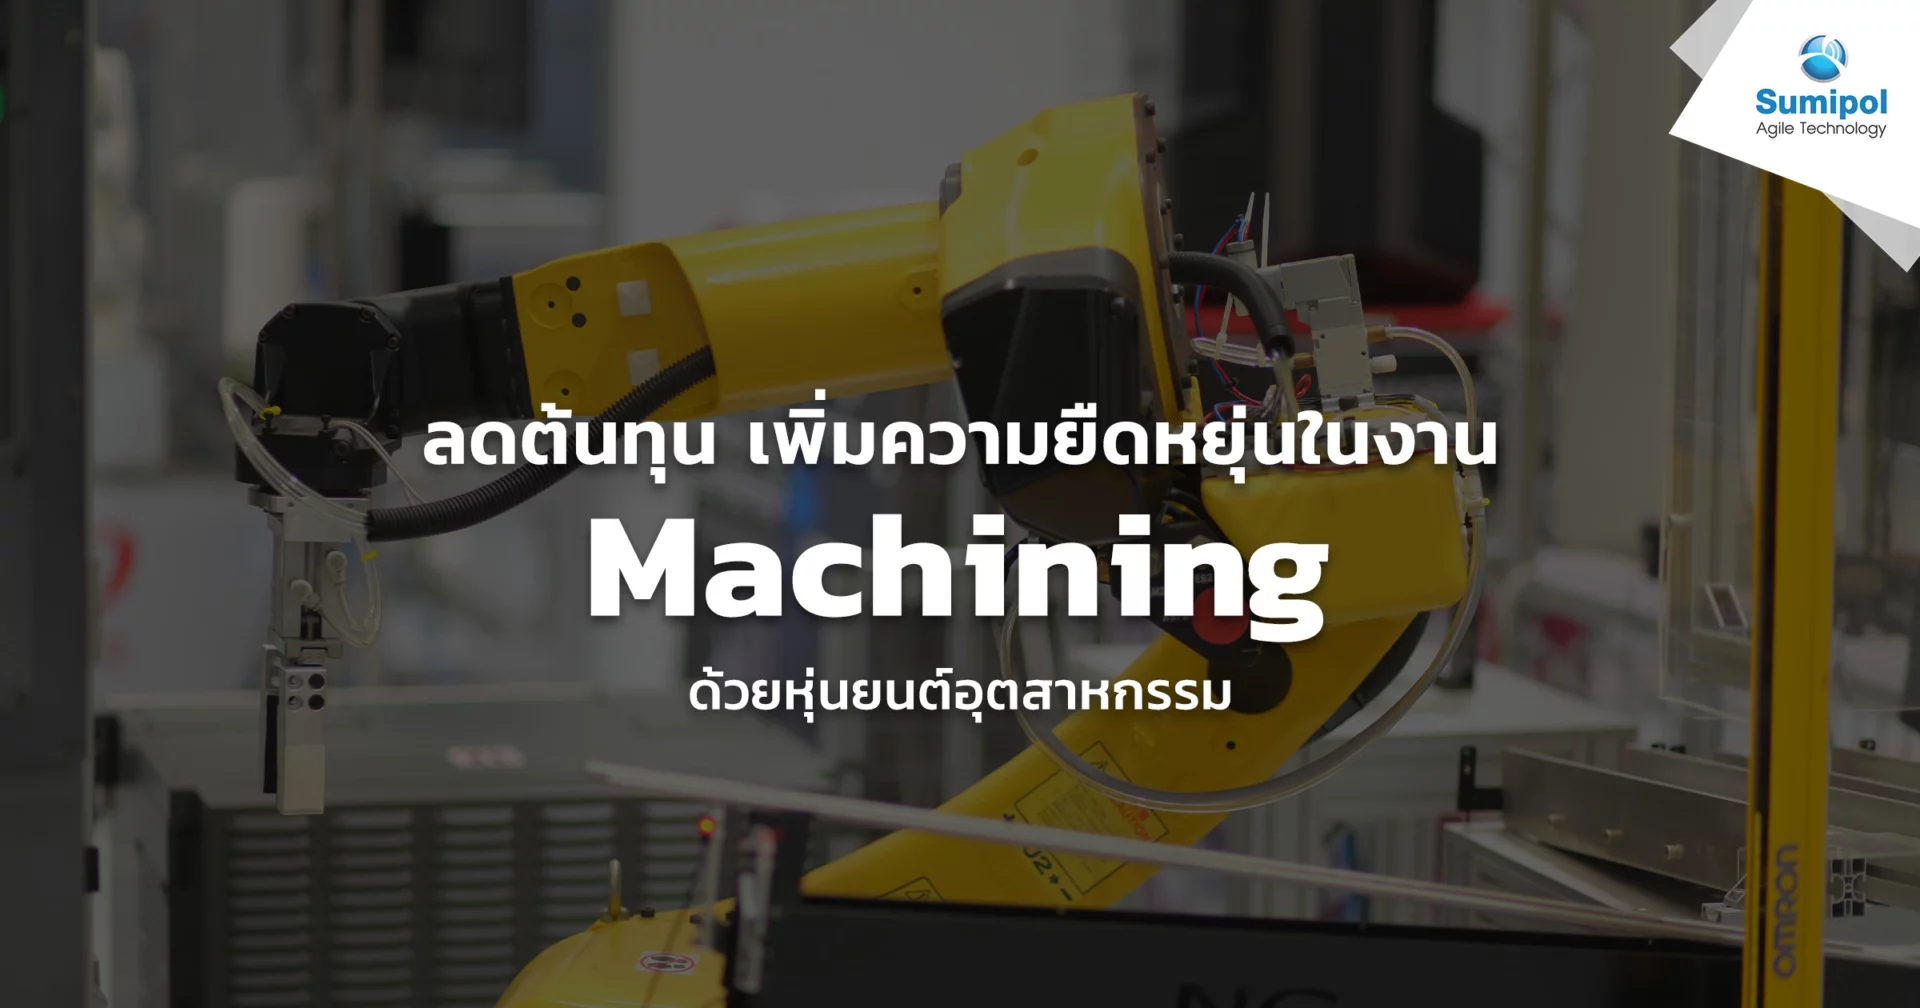 ลดต้นทุน เพิ่มความยืดหยุ่นในงาน Machining ด้วยหุ่นยนต์อุตสาหกรรม - Sumipol